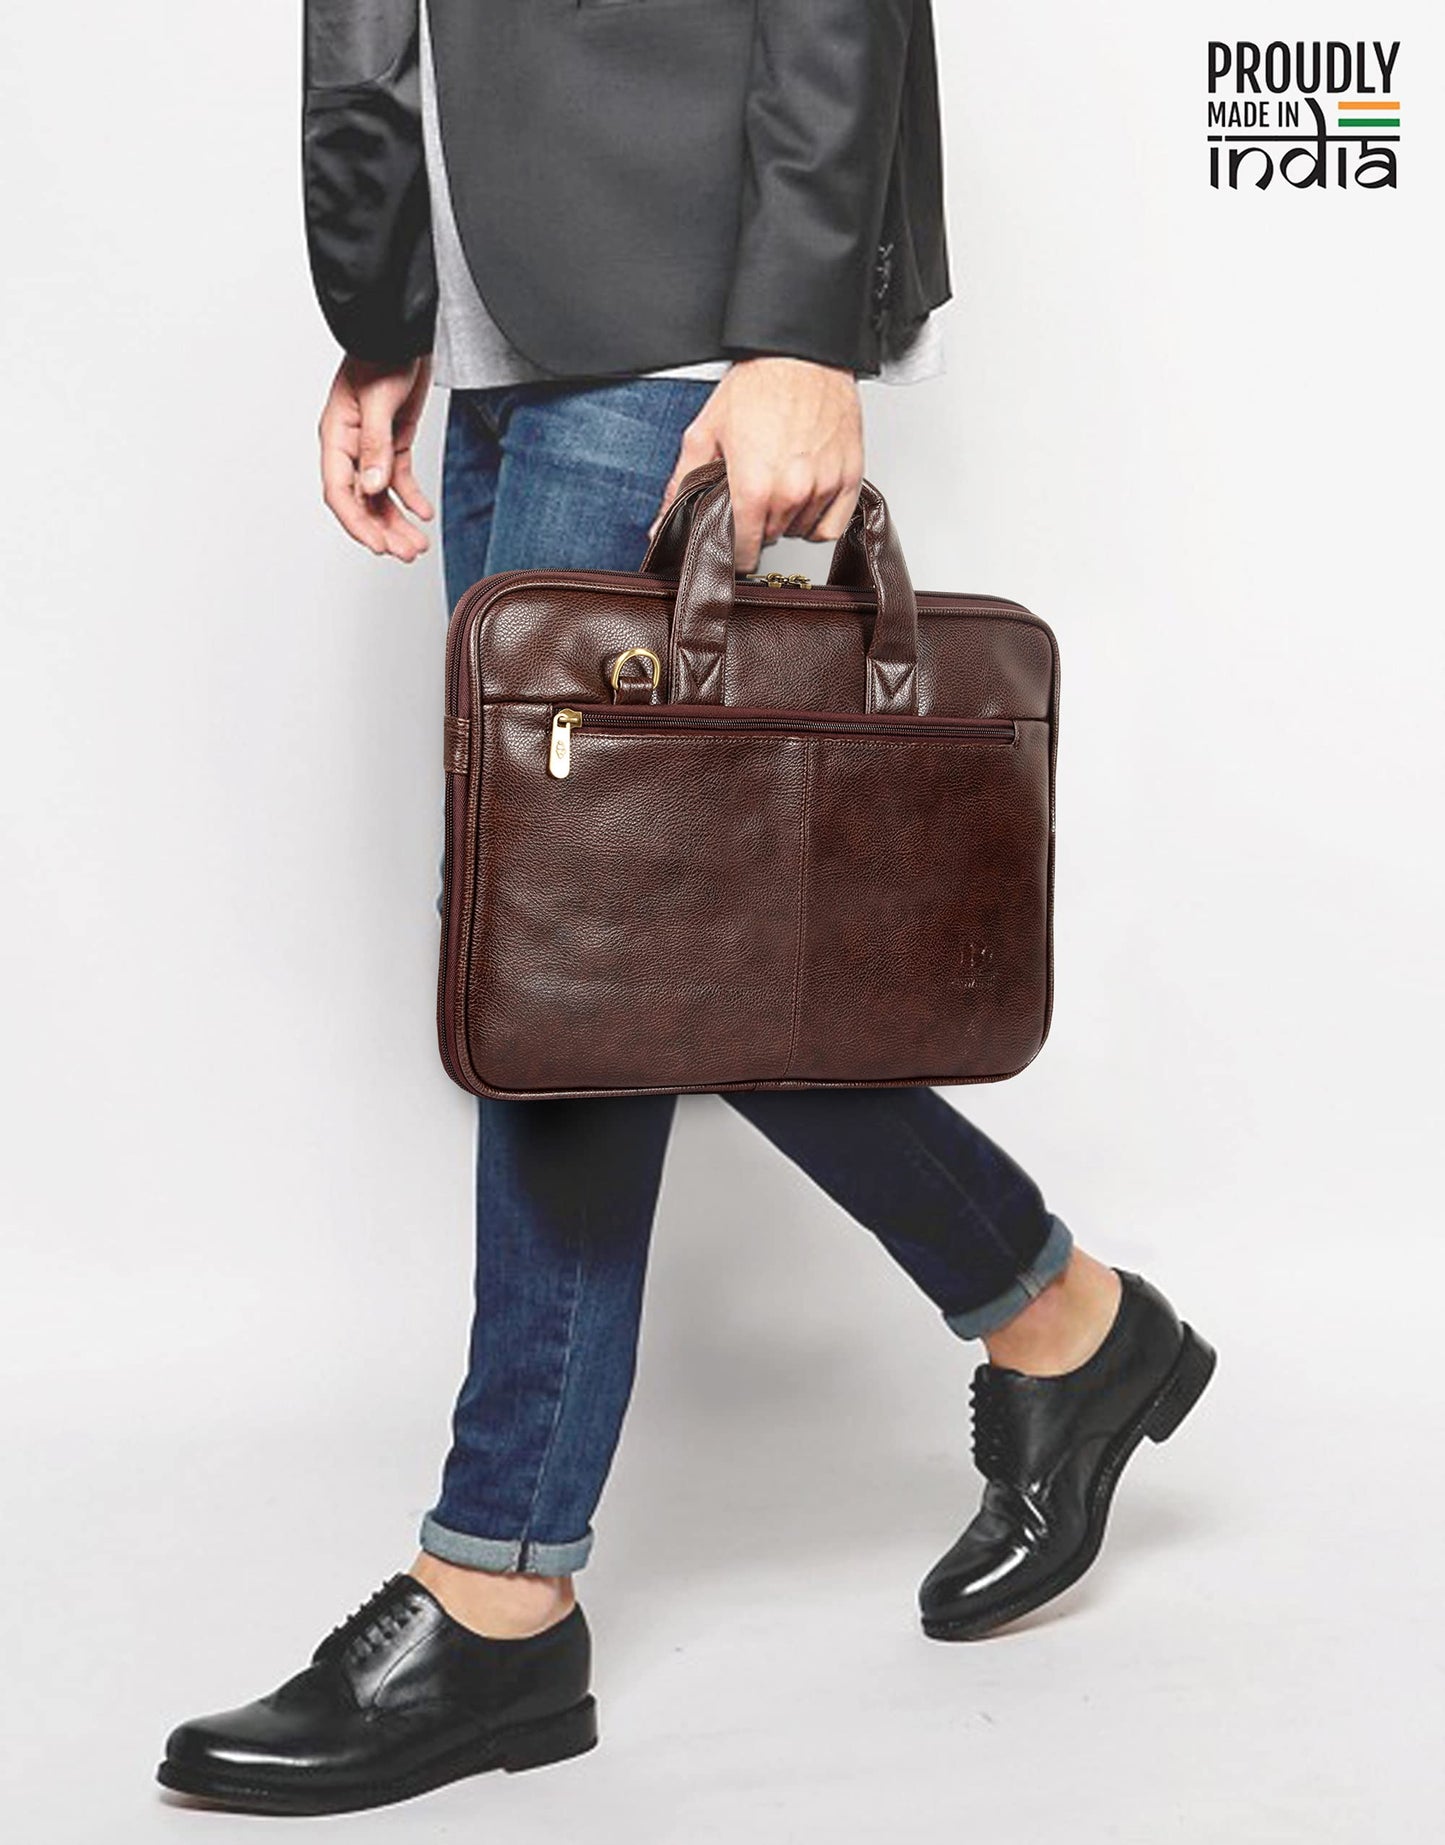 THE CLOWNFISH Cadmus Faux Leather 15.6 inch Laptop Messenger Bag Sling Bag Executive Bag Cross Over Shoulder Bag Office Bag Laptop Briefcase Handbag for Men and Women (Blue)